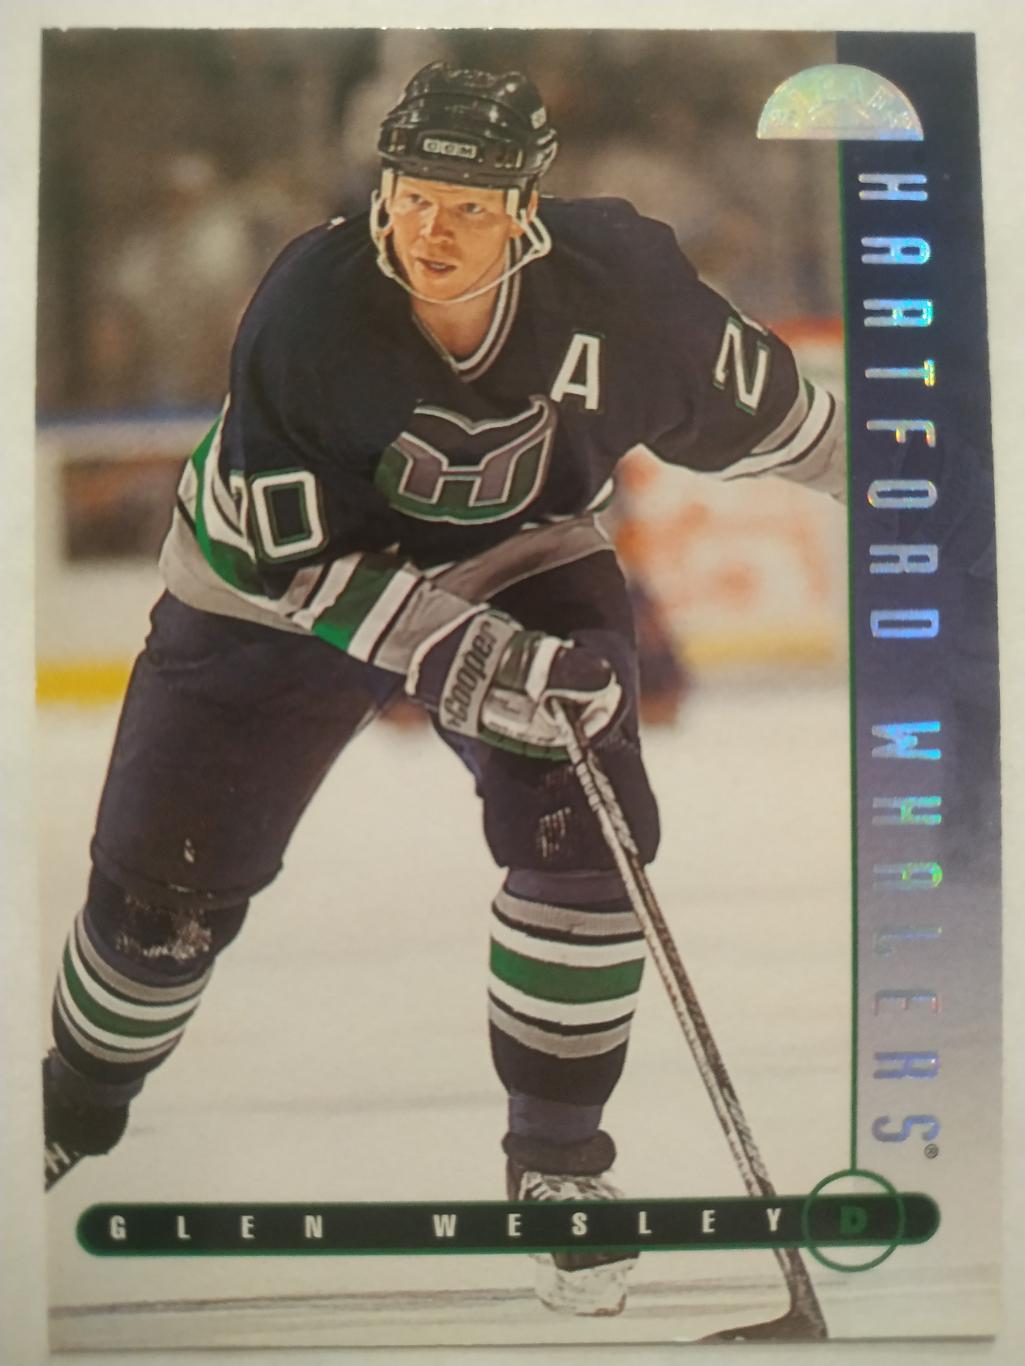 ХОККЕЙ КАРТОЧКА НХЛ DONRUSS LEAF 1995-96 GLEN WESLEY HARFORD WHALERS #231